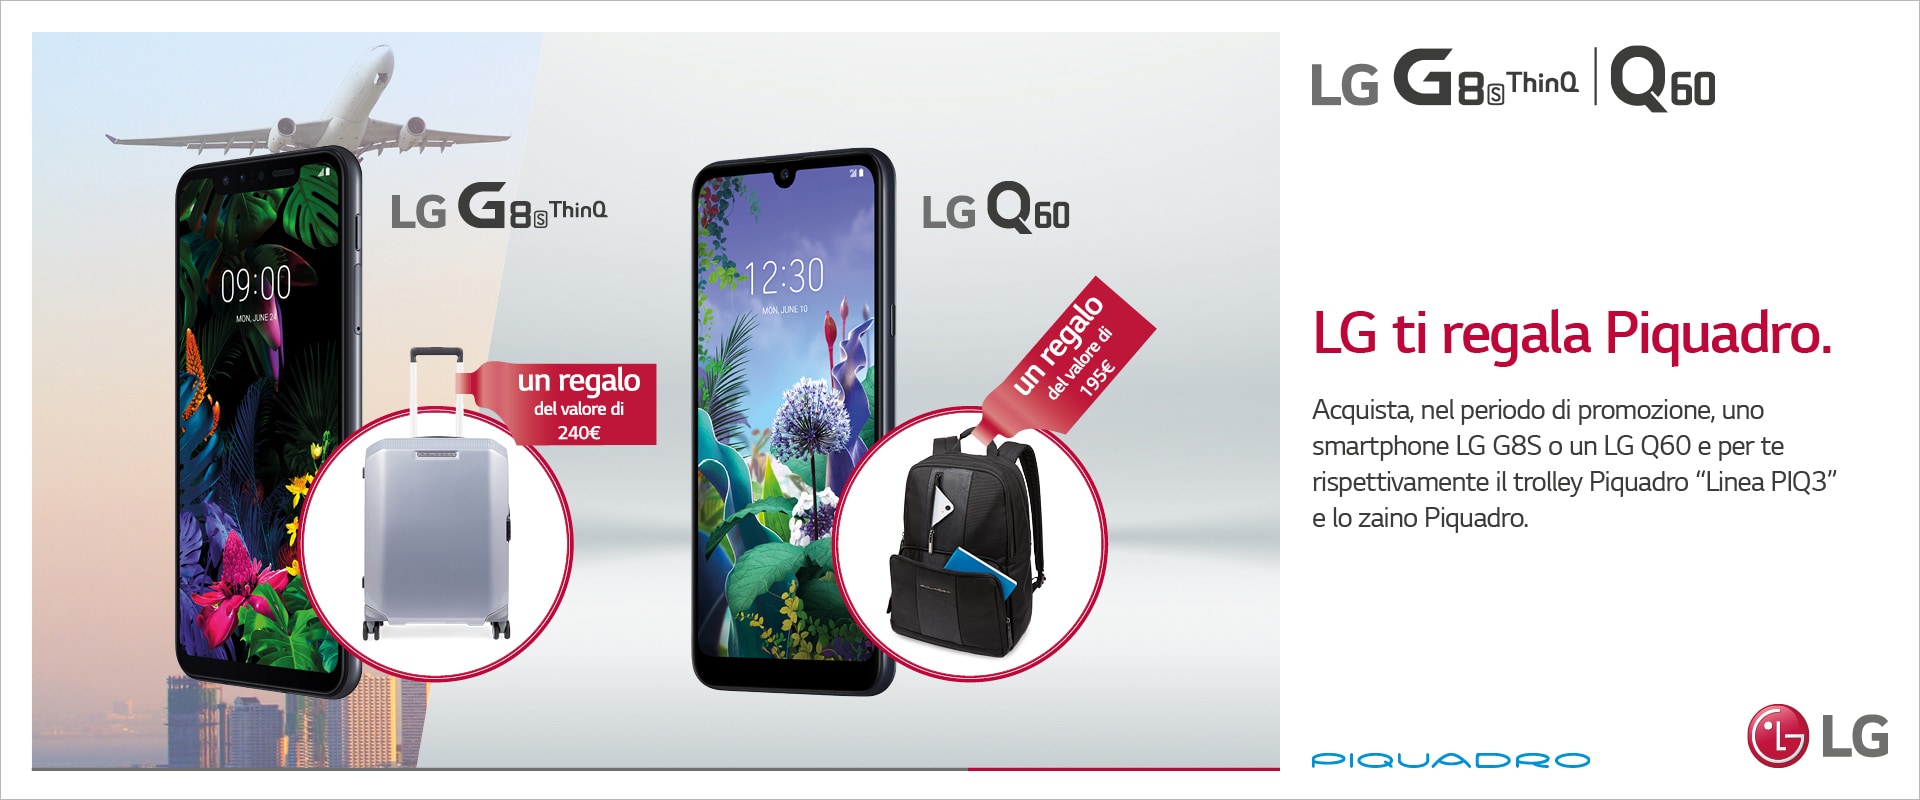 LG potrebbe regalarvi un trolley o uno zaino Piquadro acquistando LG G8s o LG Q60: come aderire alla promozione